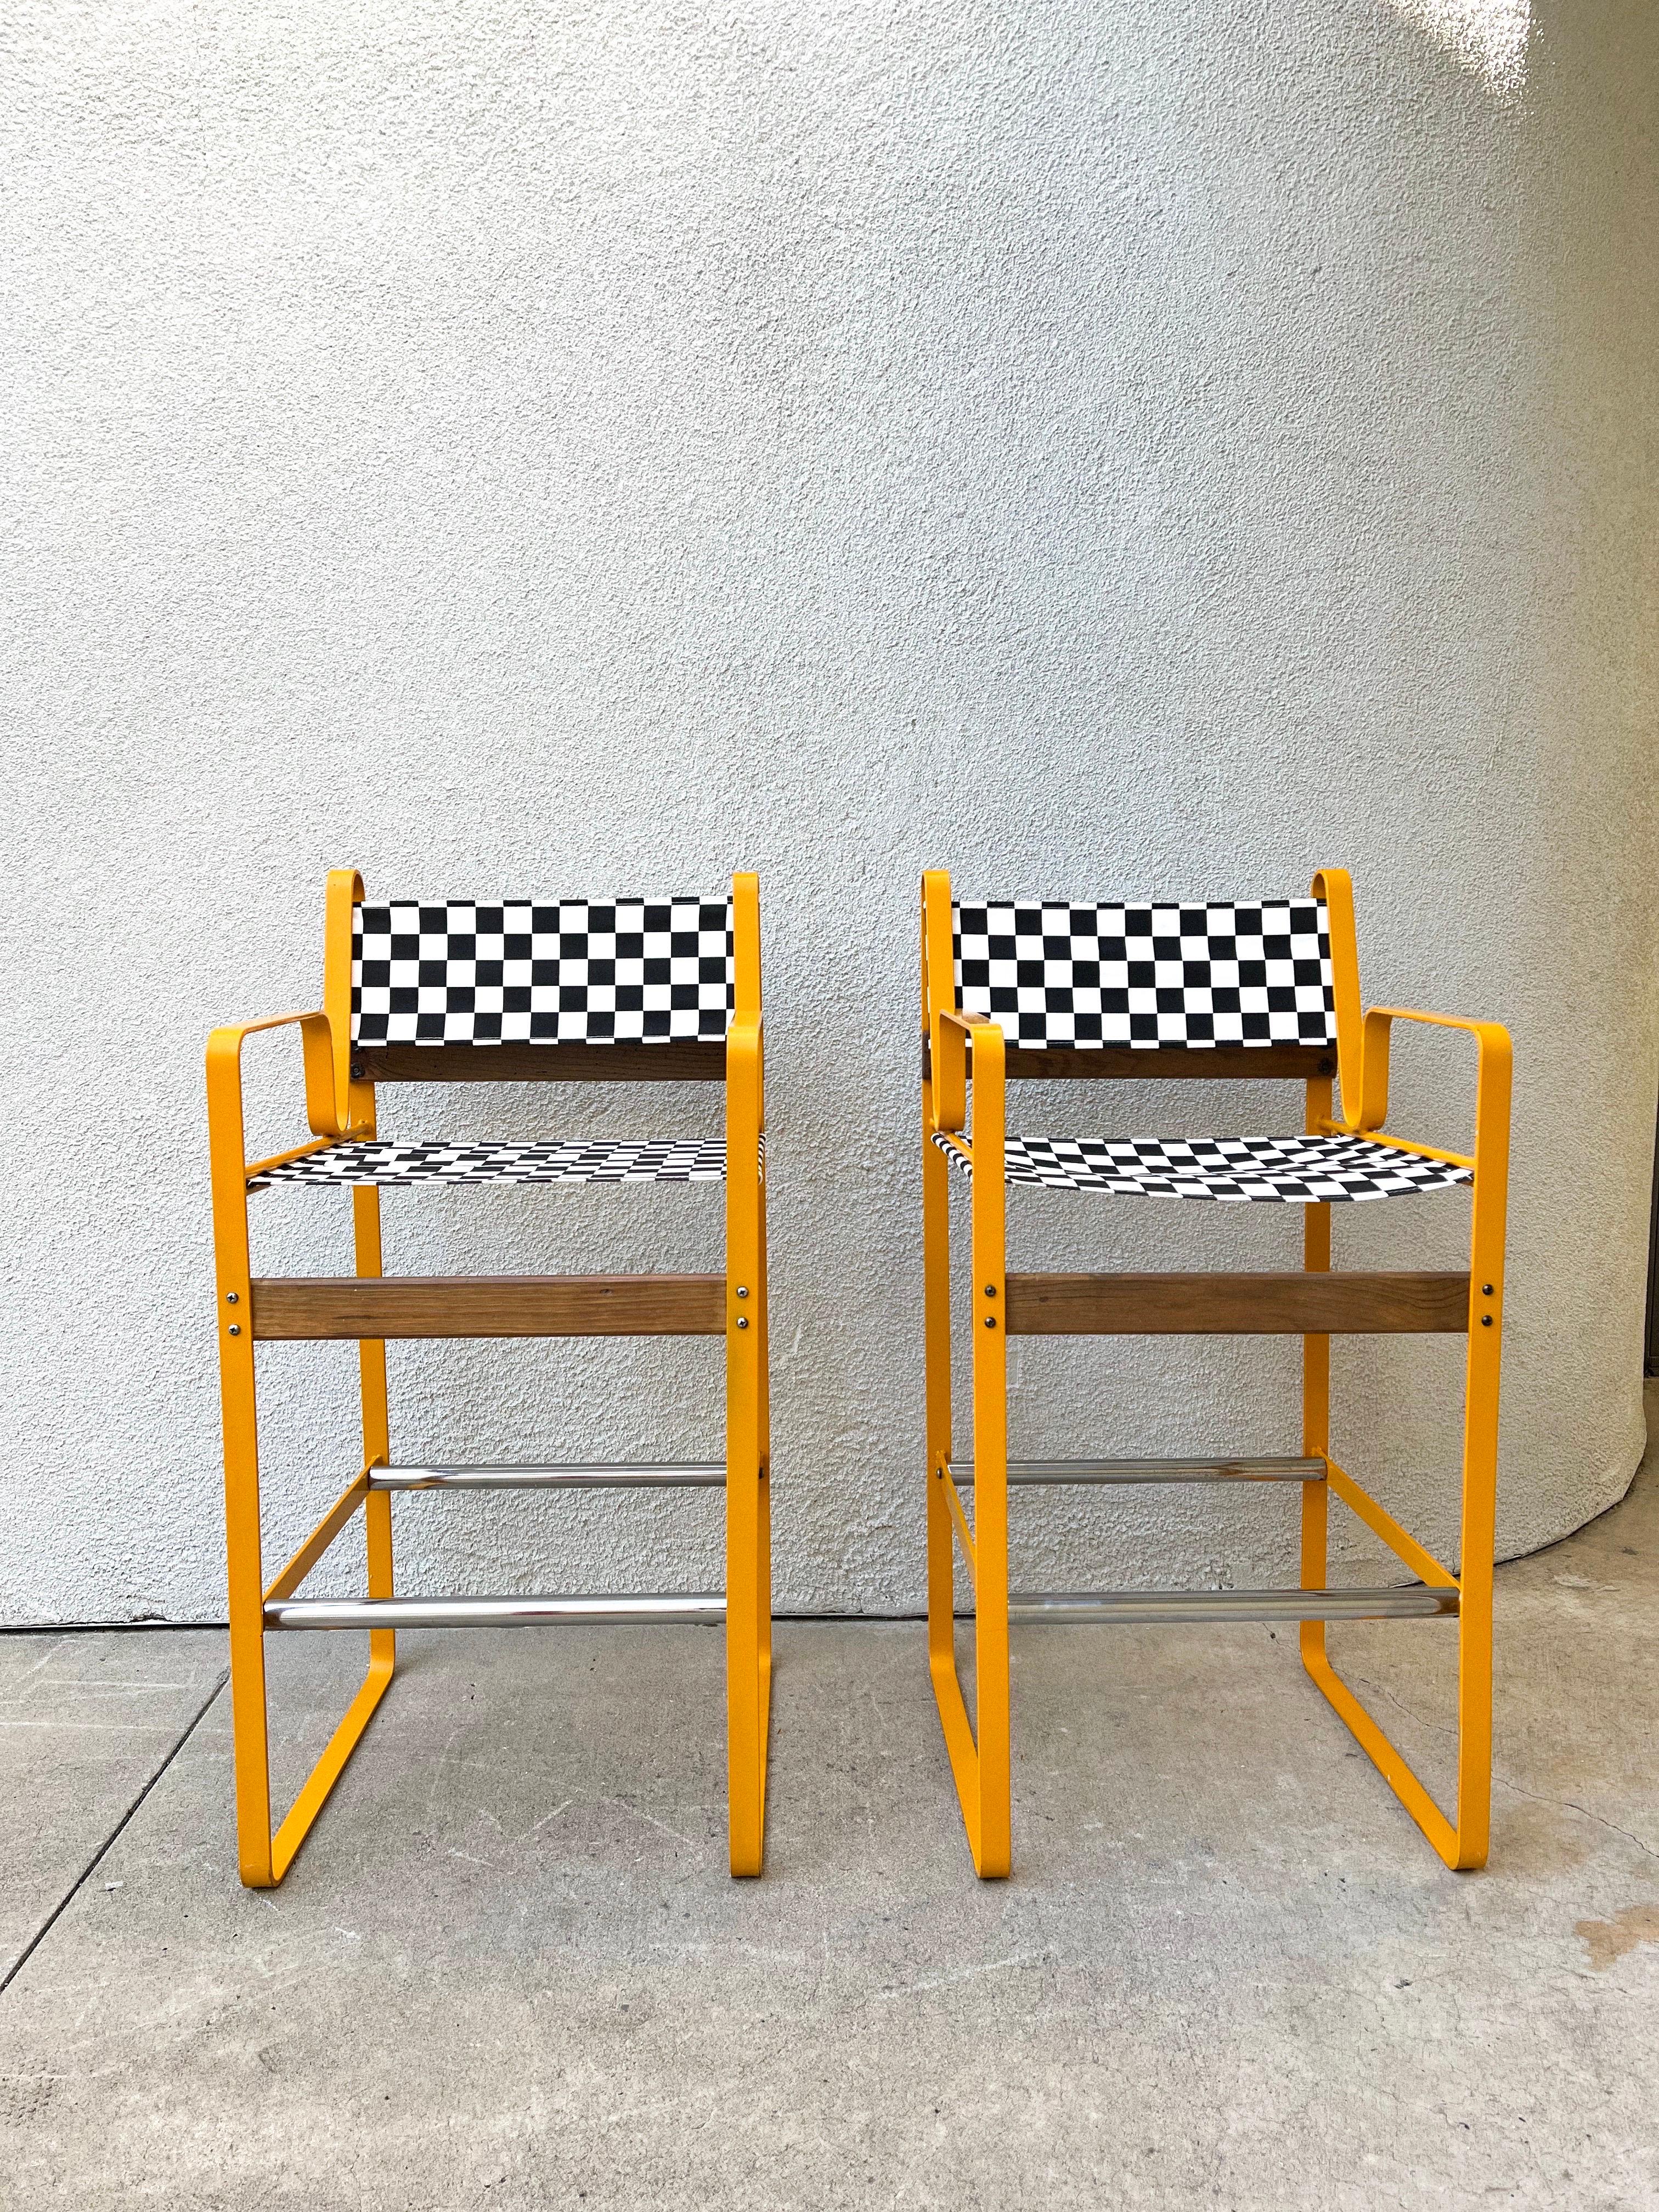 Ein Paar postmoderne Barhocker nach dem Vorbild von Bruno Pollak. Die Hocker haben ein sehr stabiles, orangefarbenes Metallgestell, verchromte Fußstützen und Holzstangen. Sitze und Rückenlehnen sind aus nagelneuem Baumwollstoff mit schwarz-weißem